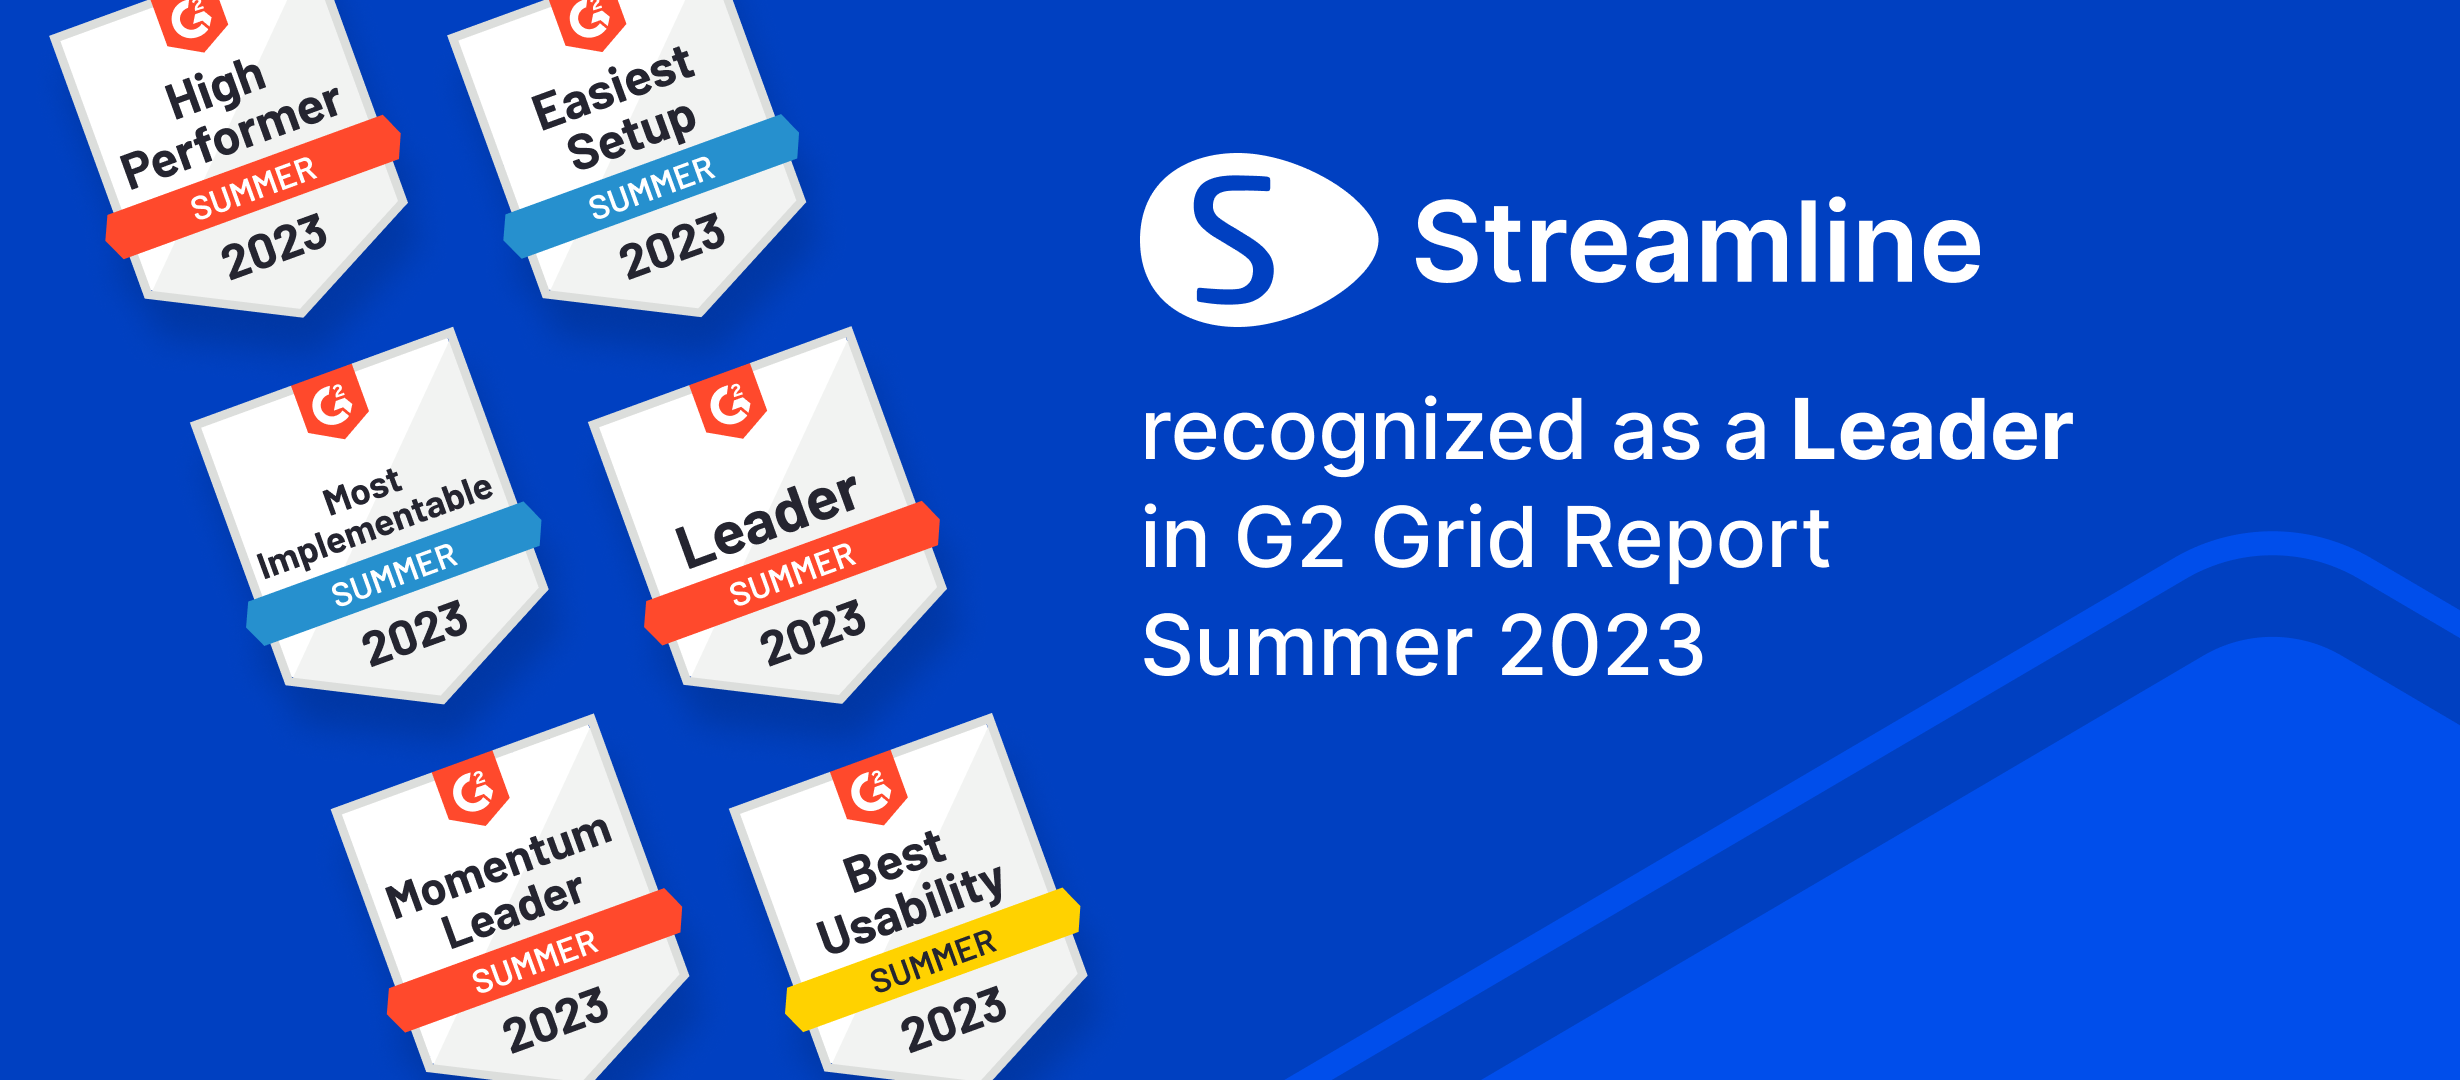 GMDH Streamline nimettiin useiden kategorioiden johtajaksi G2 Summer'23 -raporteissa | GMDH